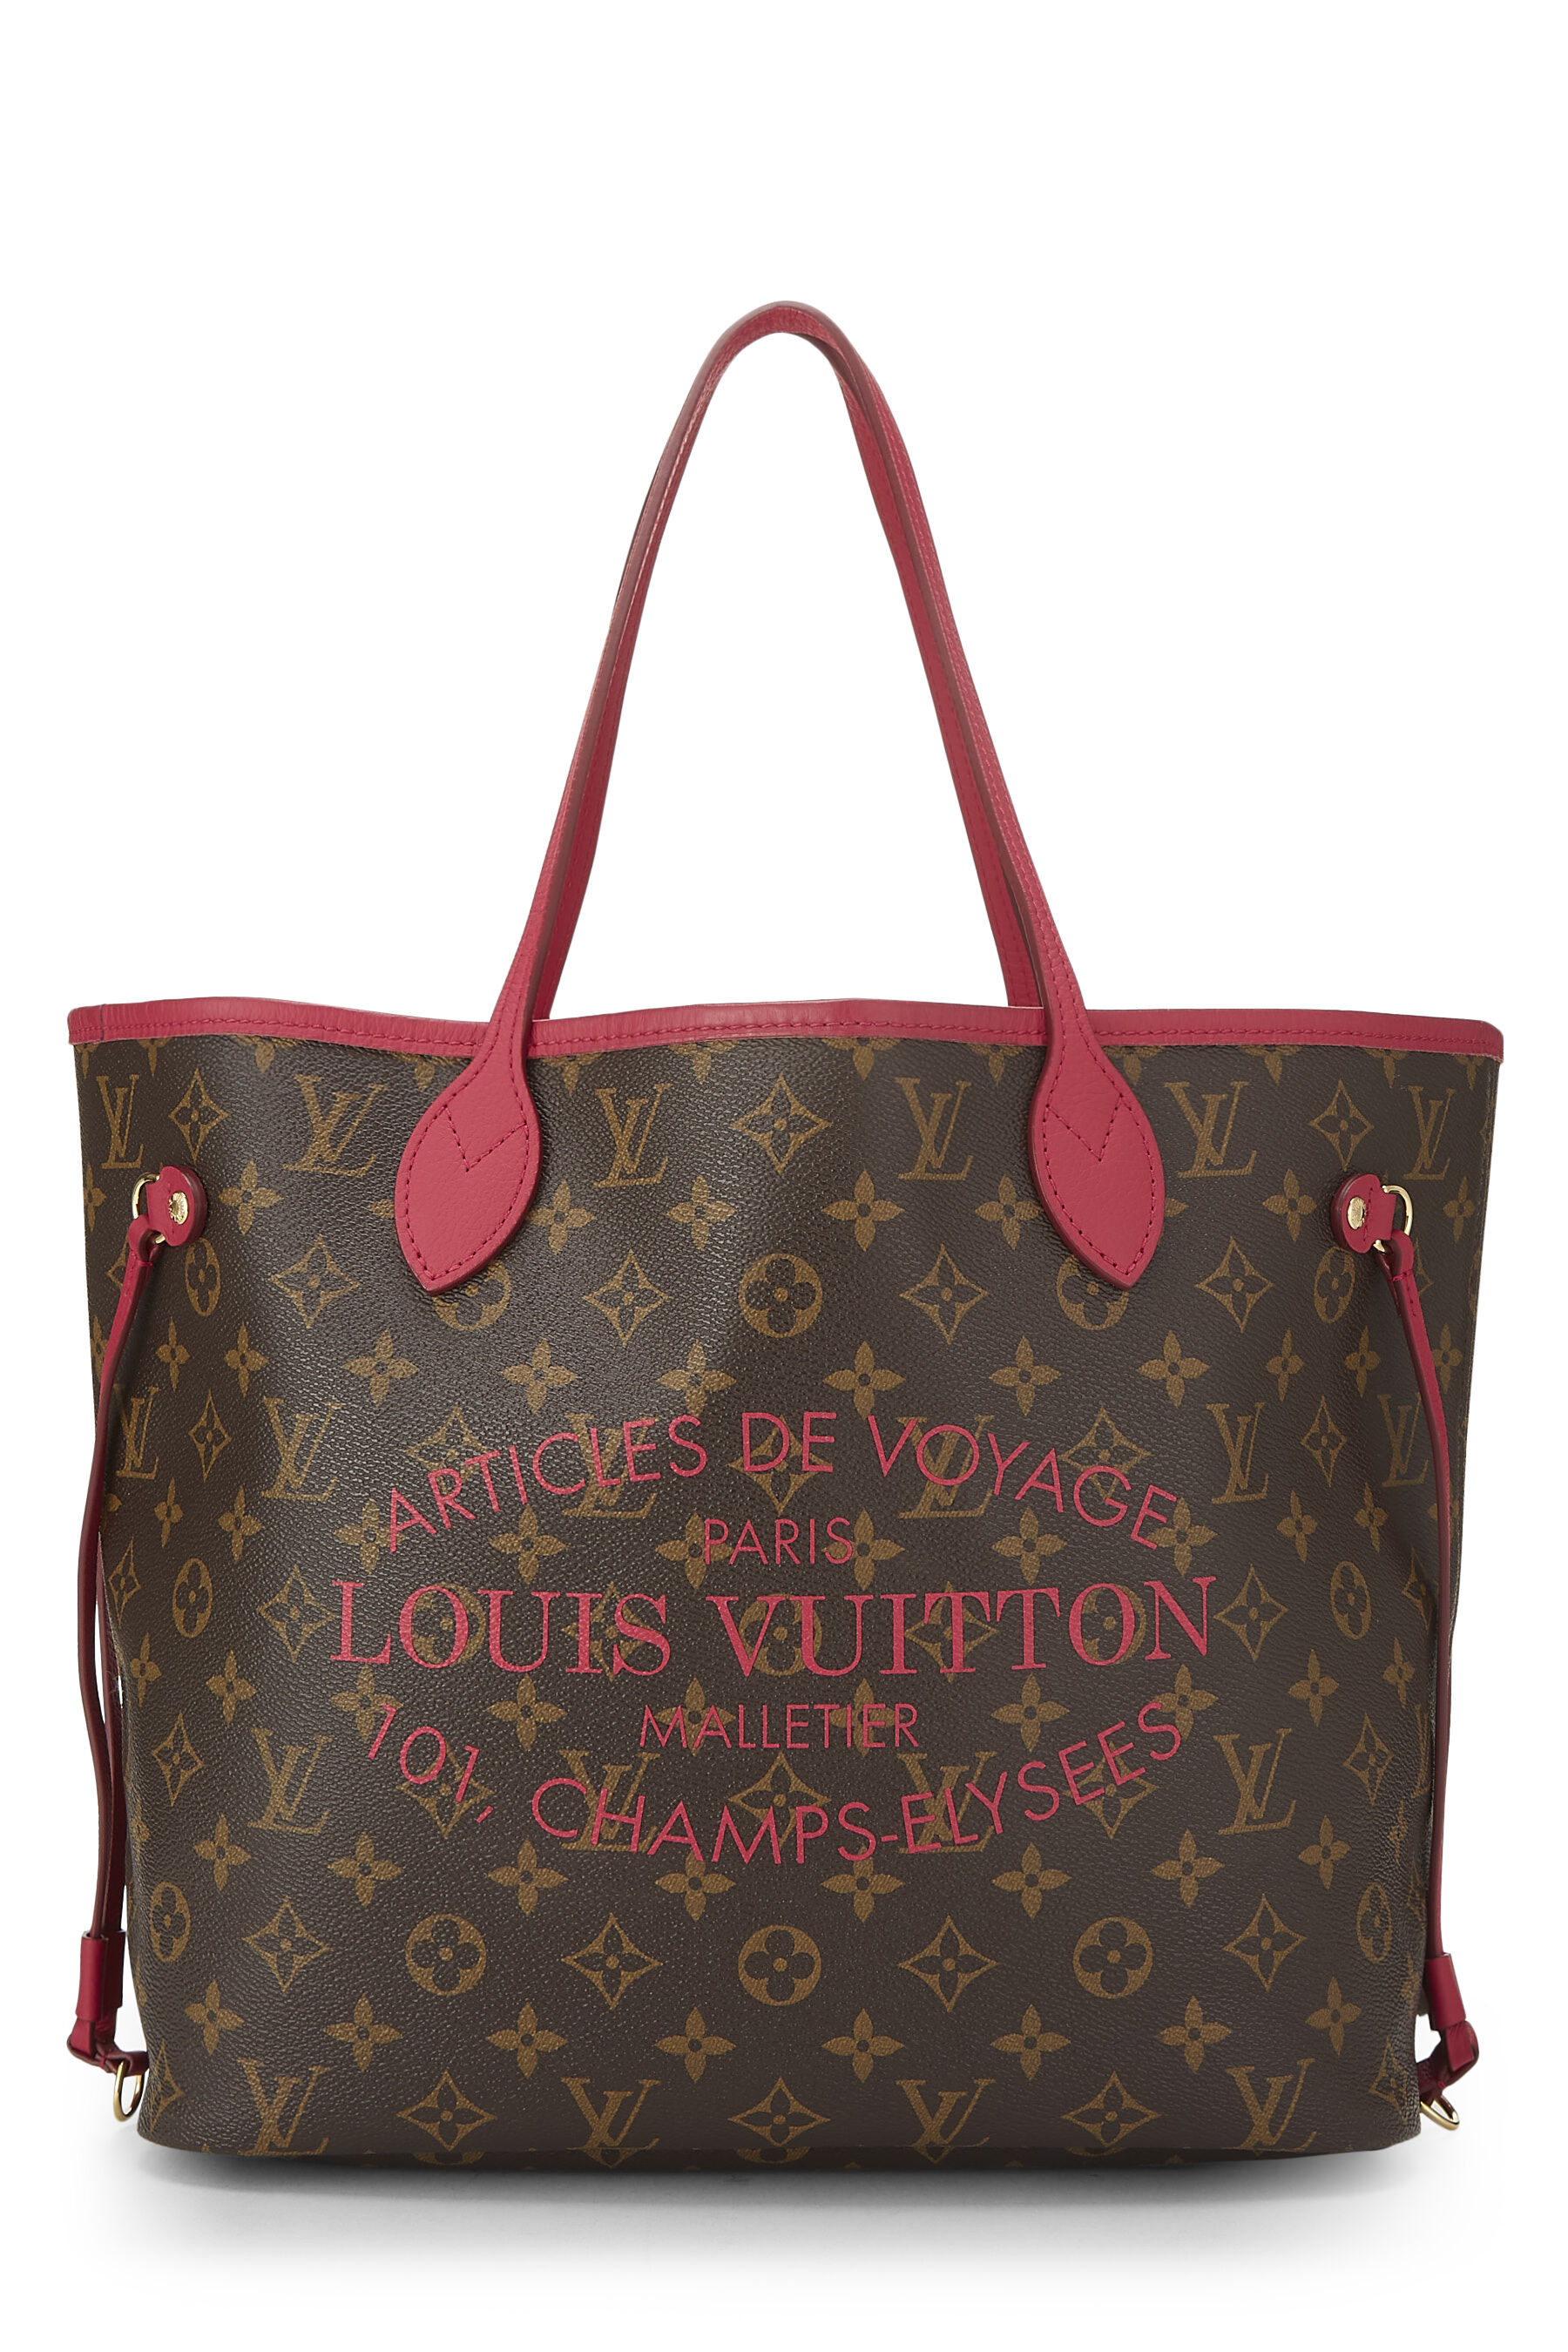 Louis Vuitton Articles de Voyage Neverfull